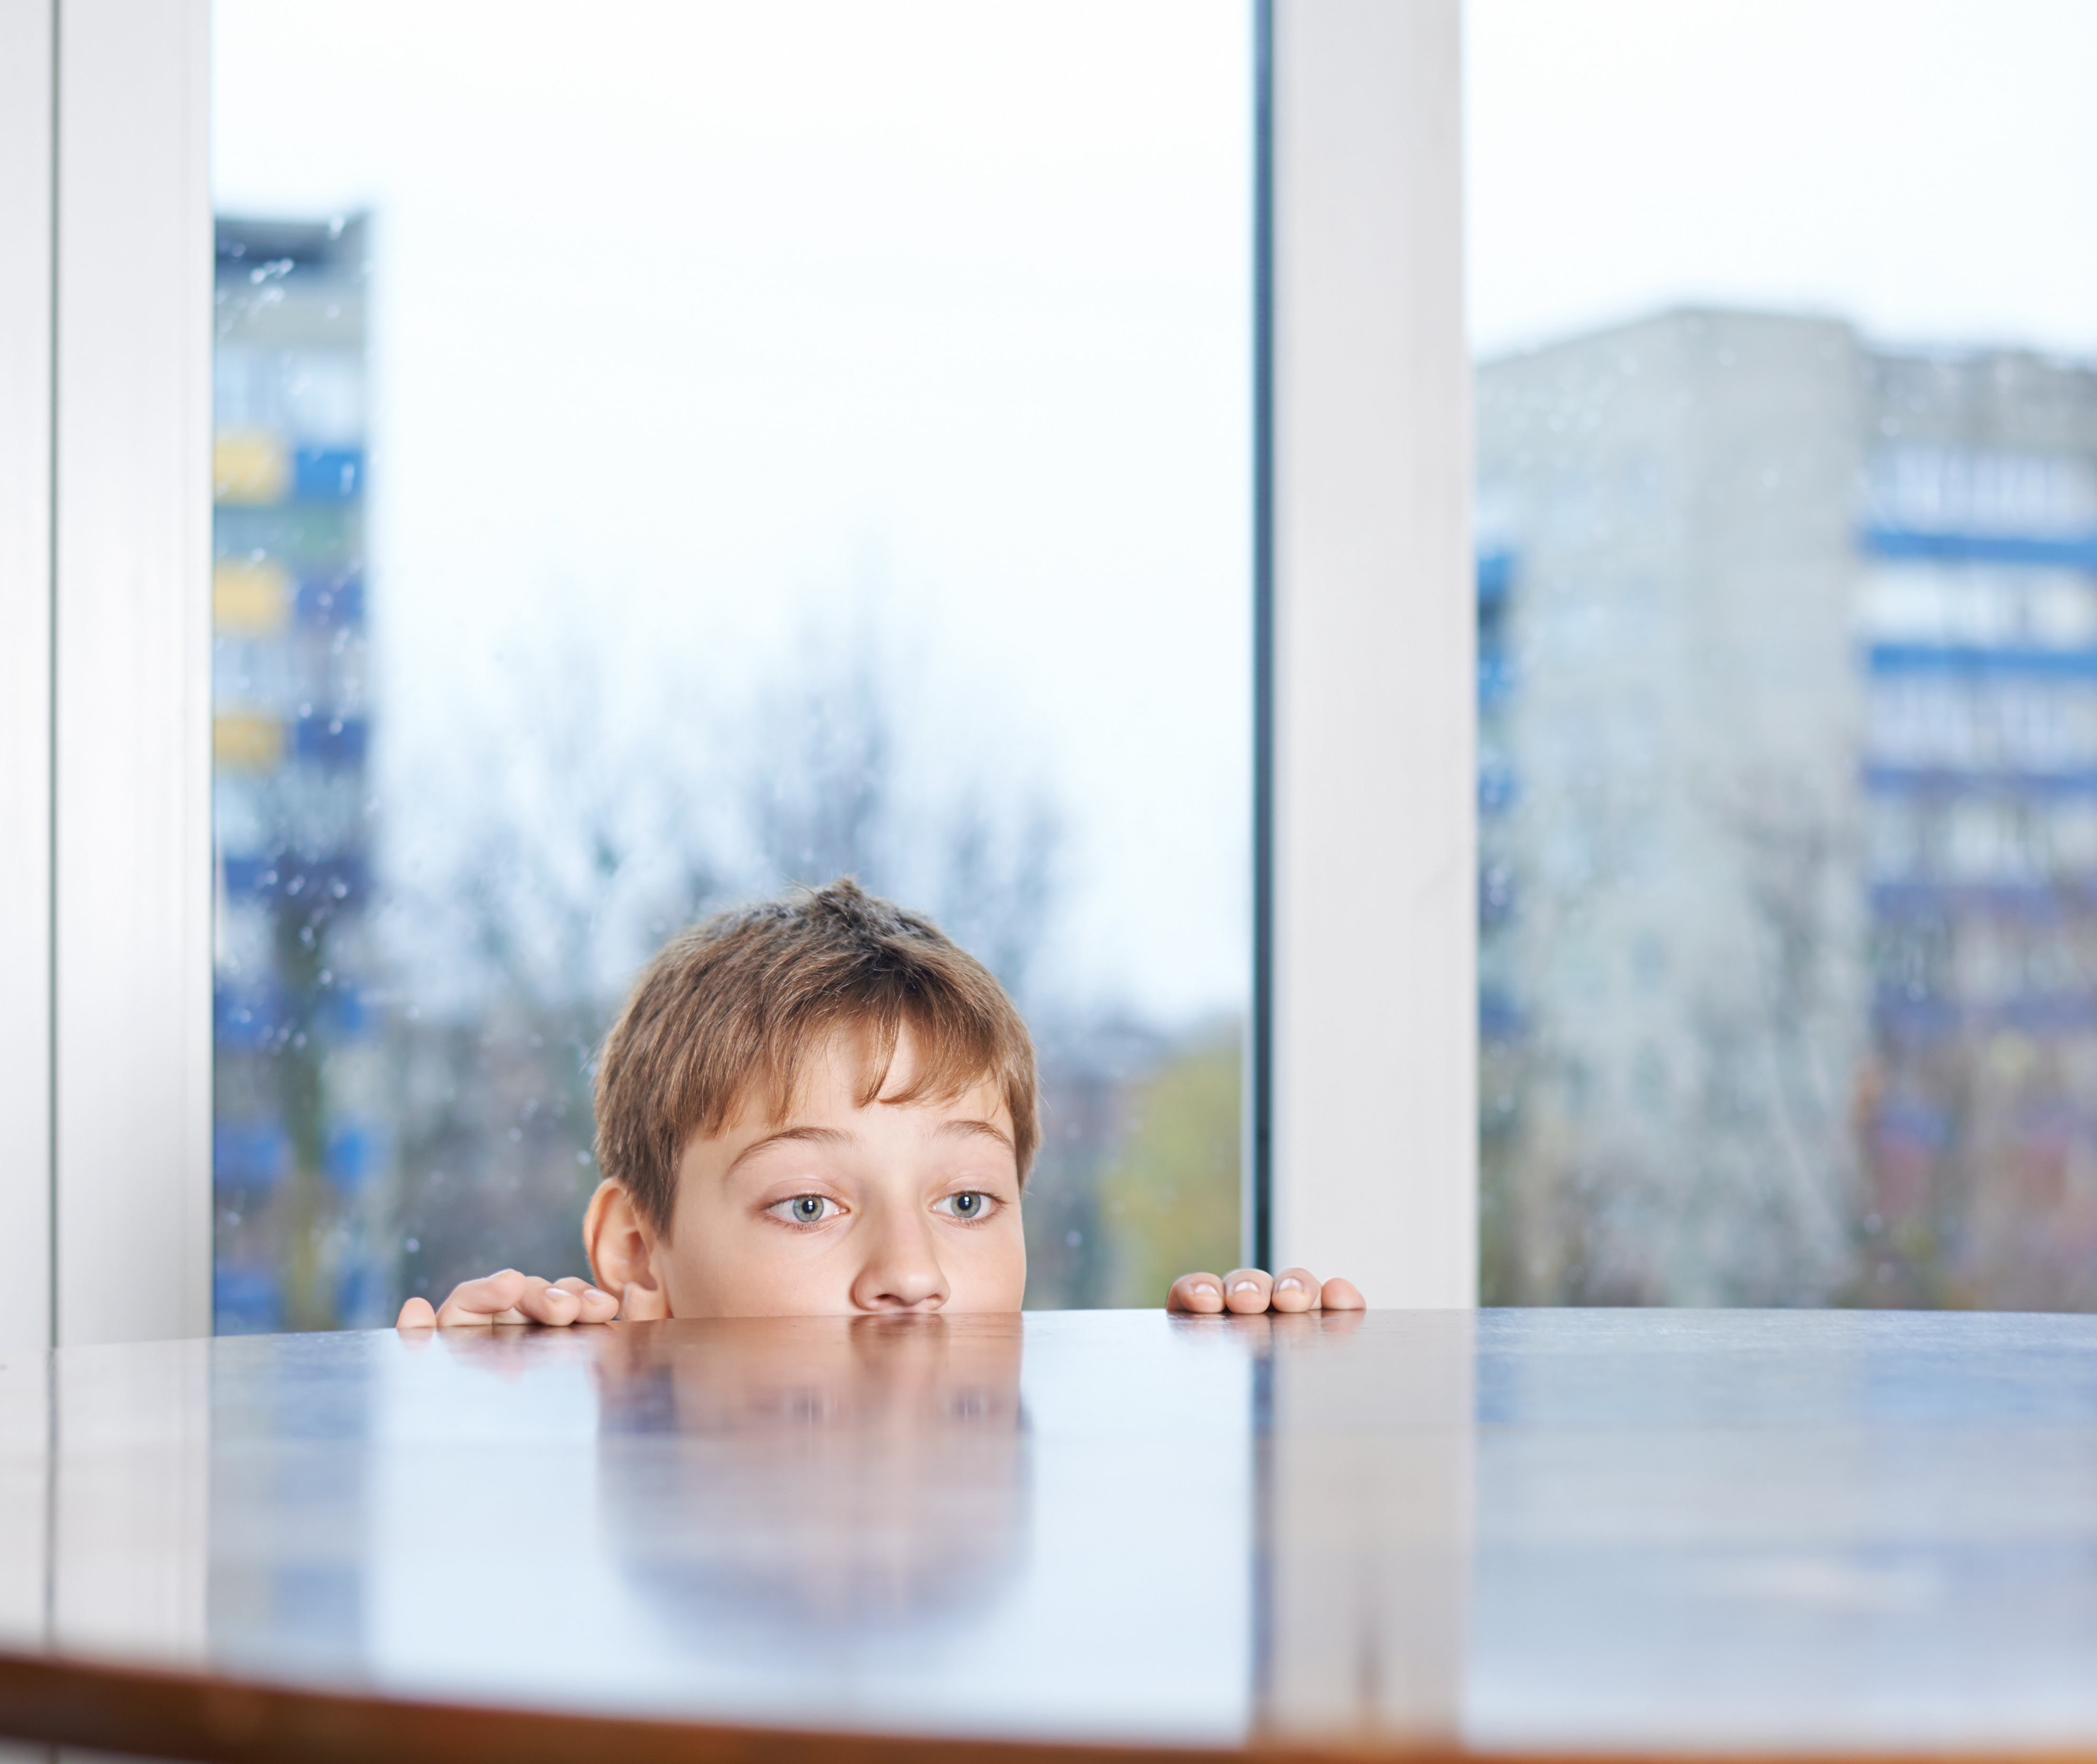 Ein kleiner Junge, der hinter einem Holztisch hervorschaut | Quelle: Shutterstock